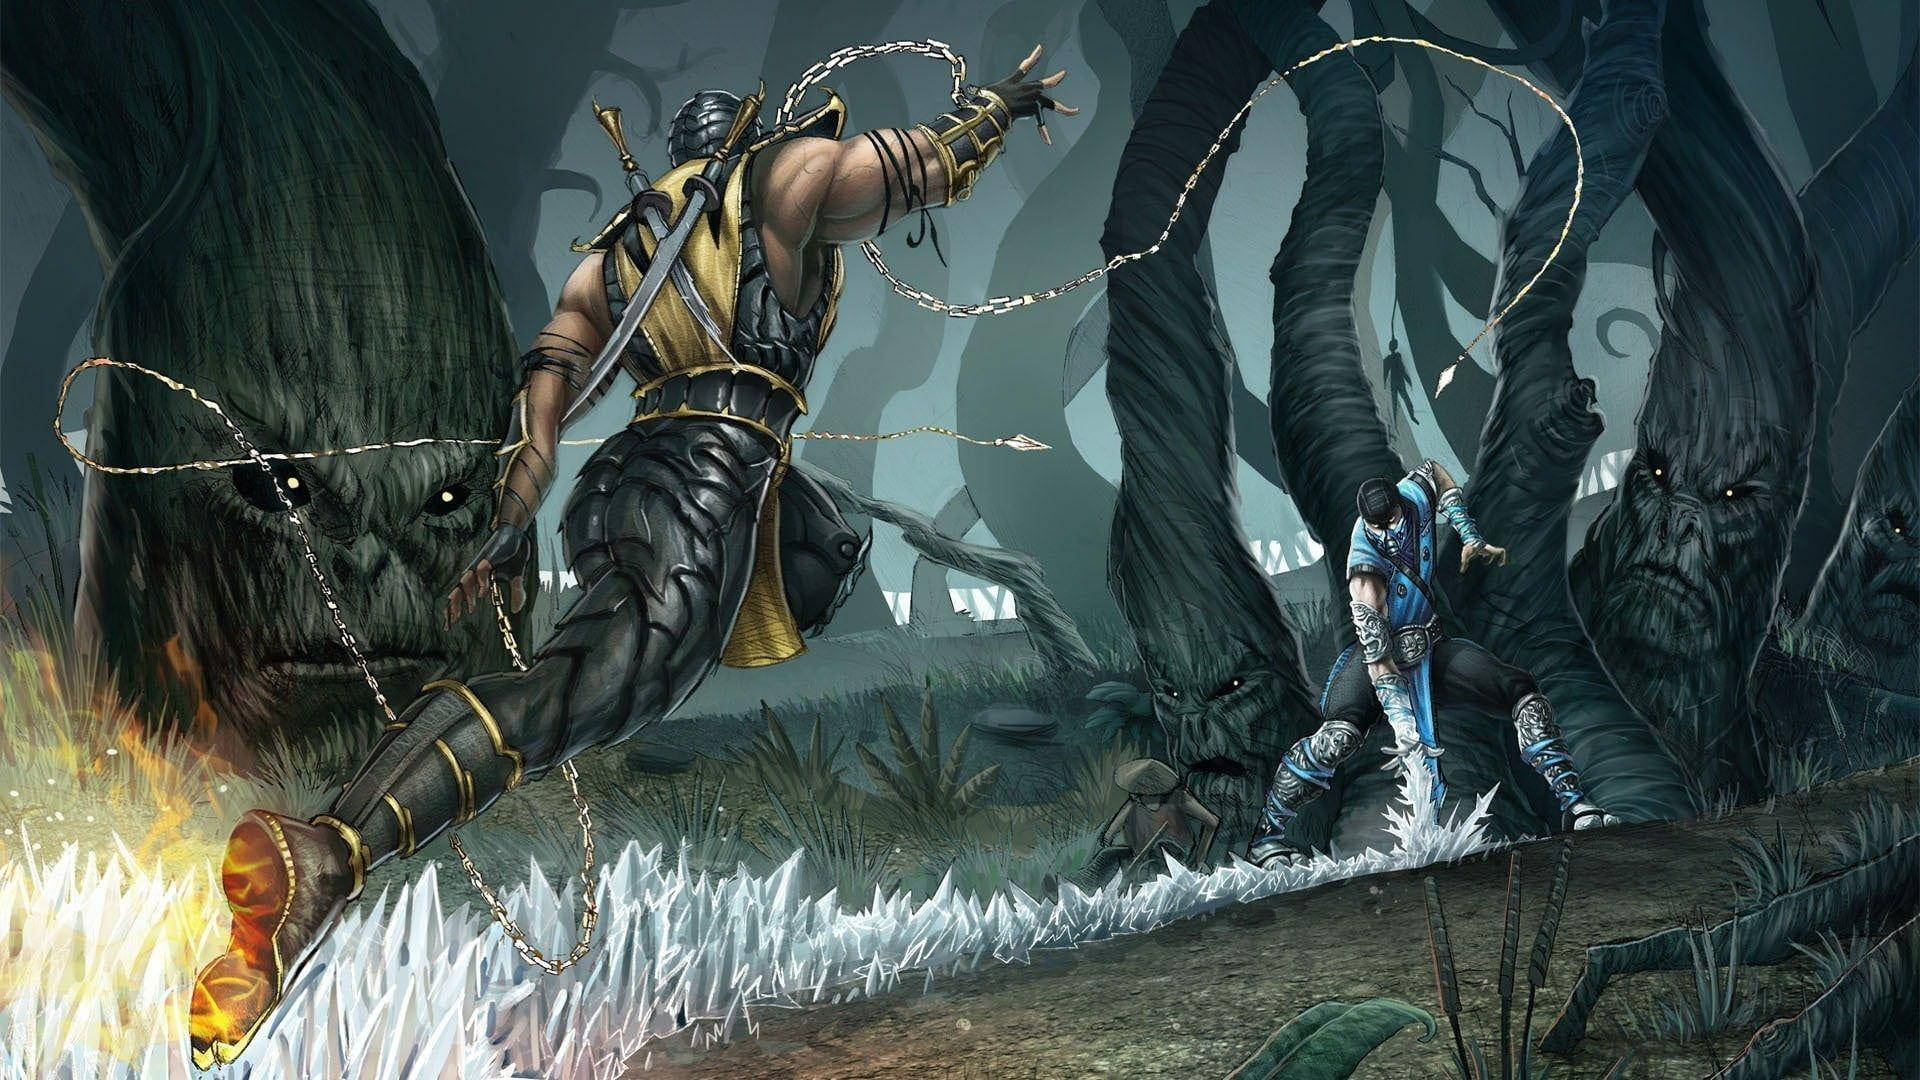 Mortal Kombat Scorpion Vs Sub Zero In Forest